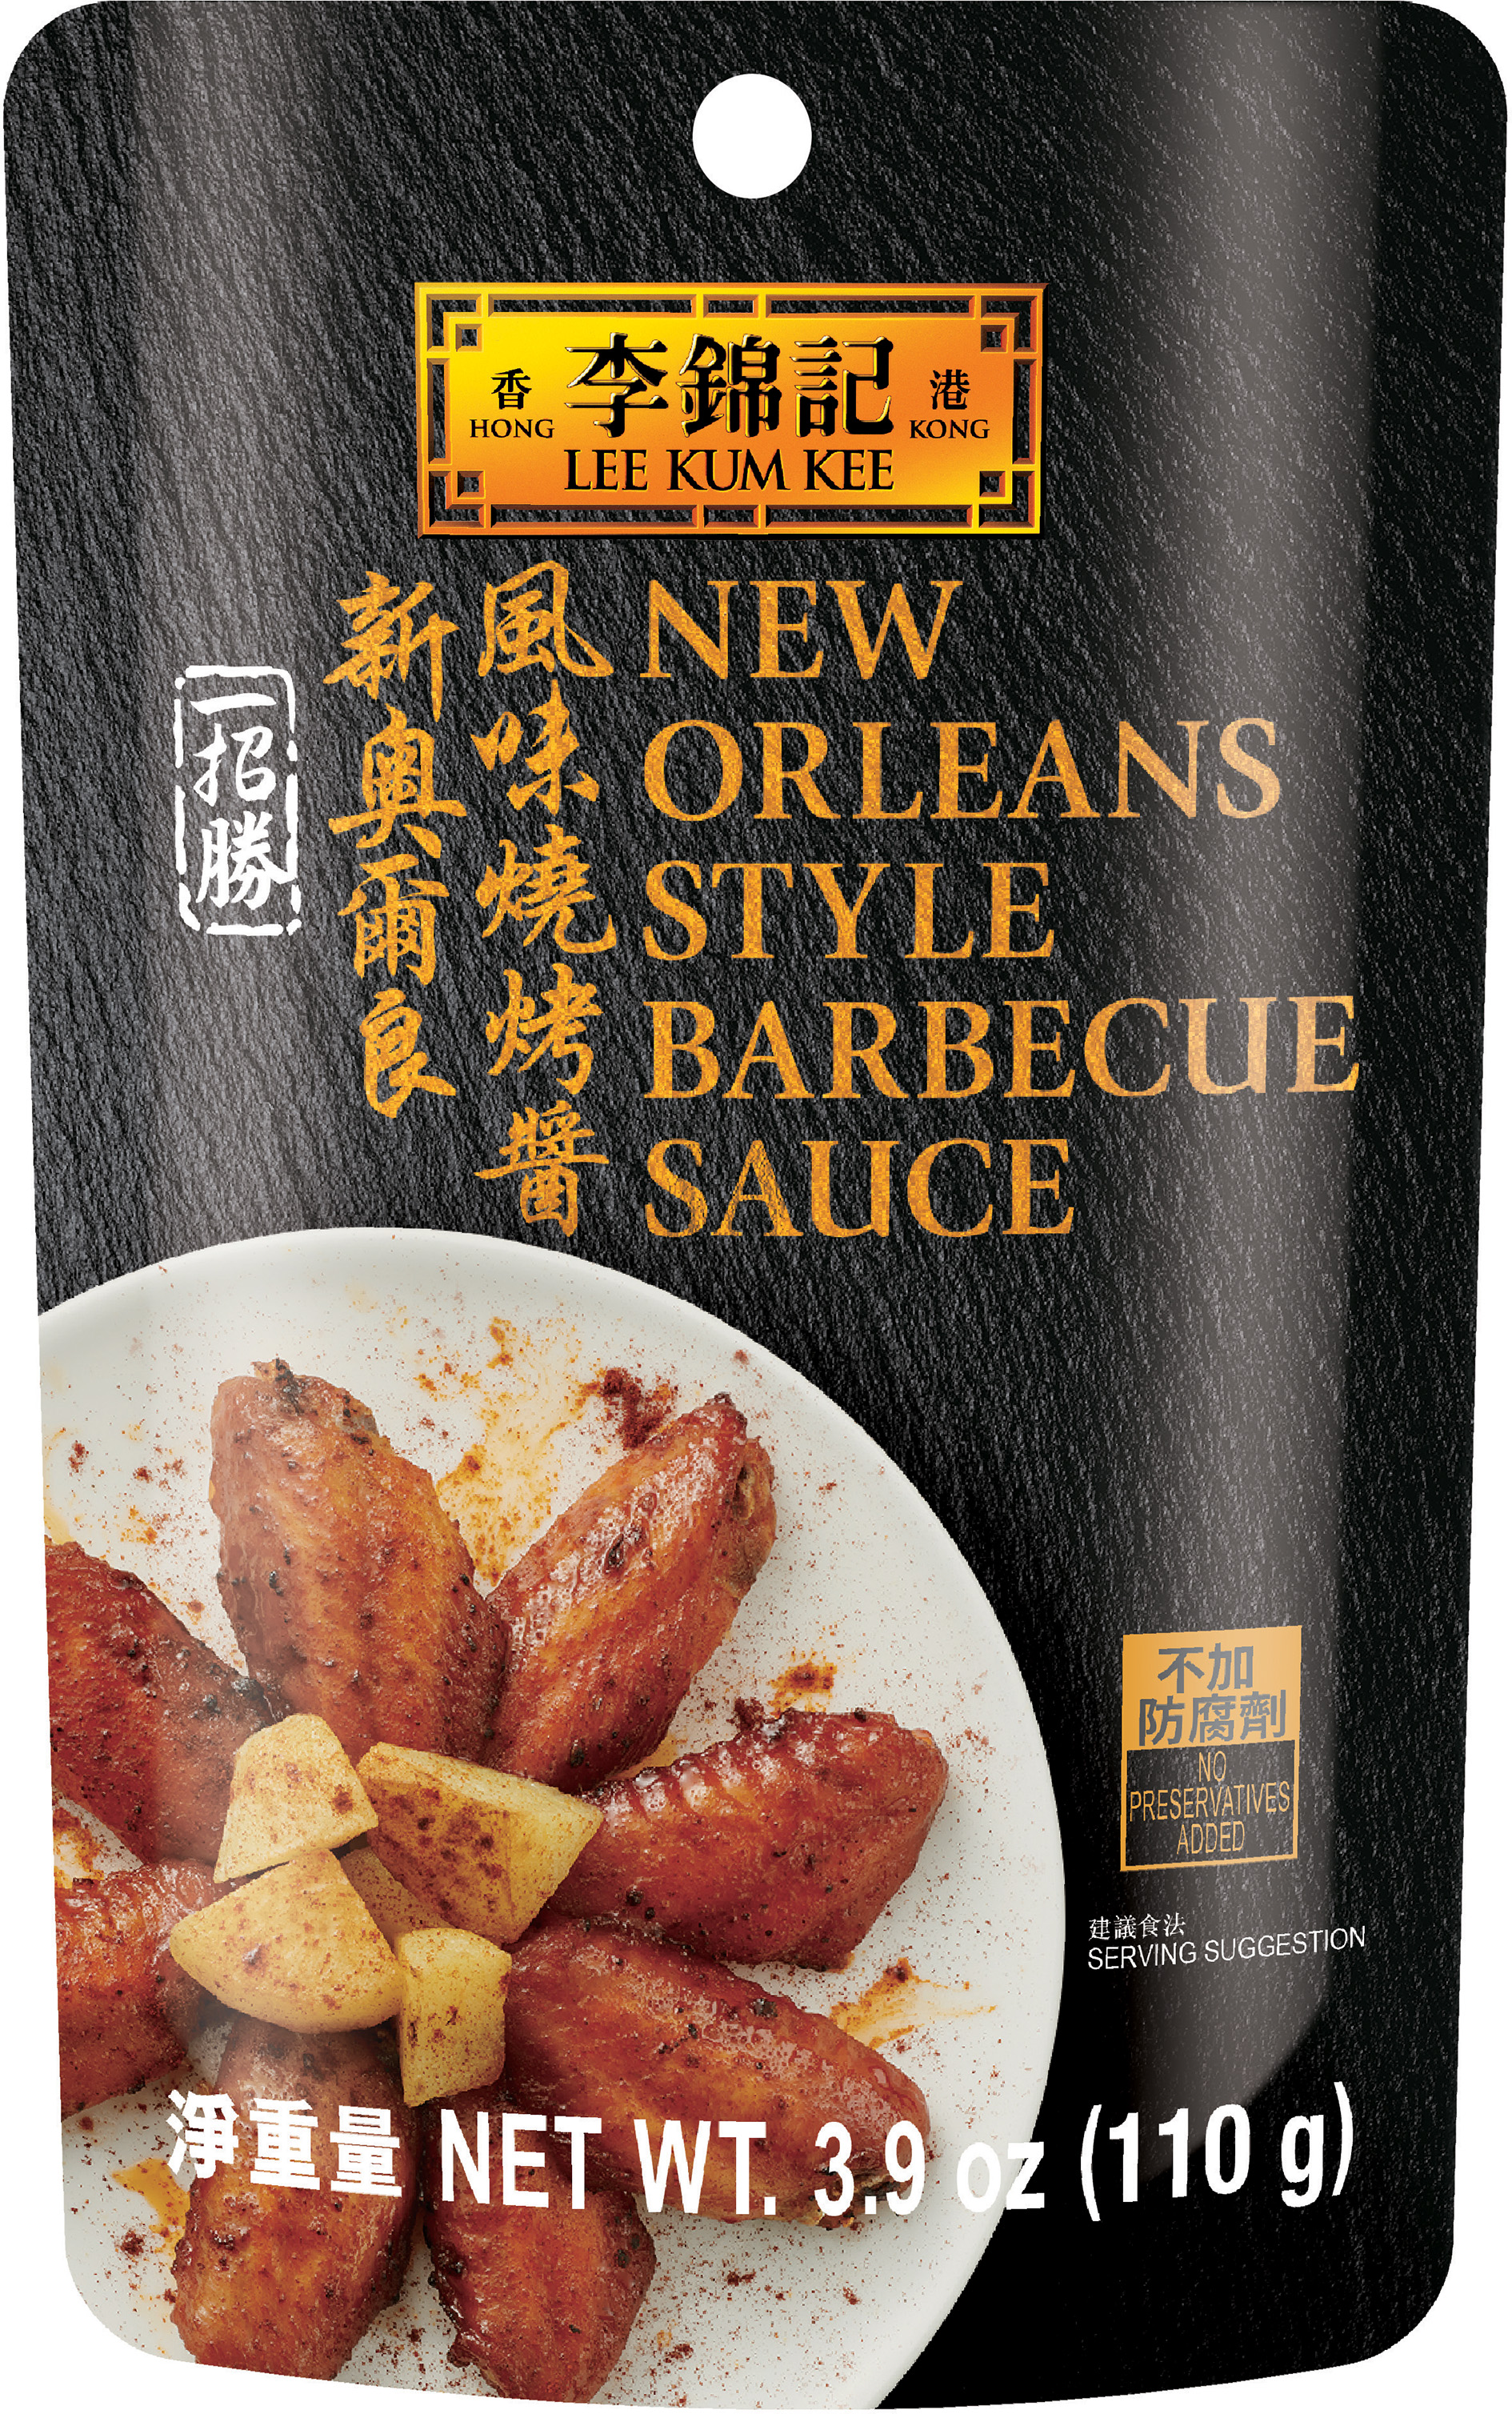 新奧爾良風味燒烤醬| 方便醬料| 李錦記美國| USA